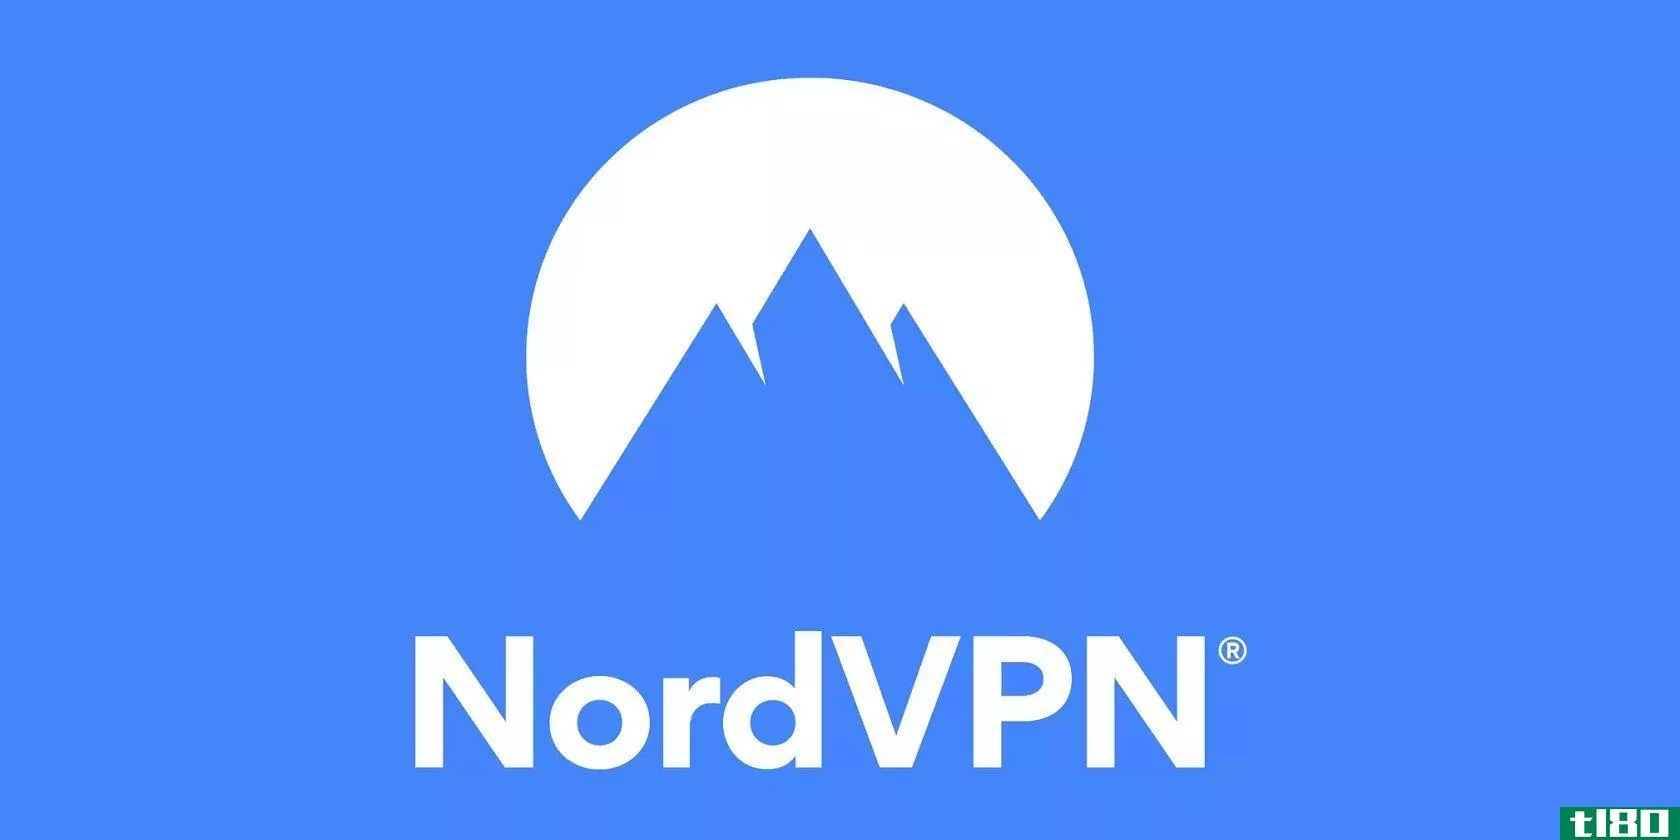 nordvpn和nordpass是完美的安全组合